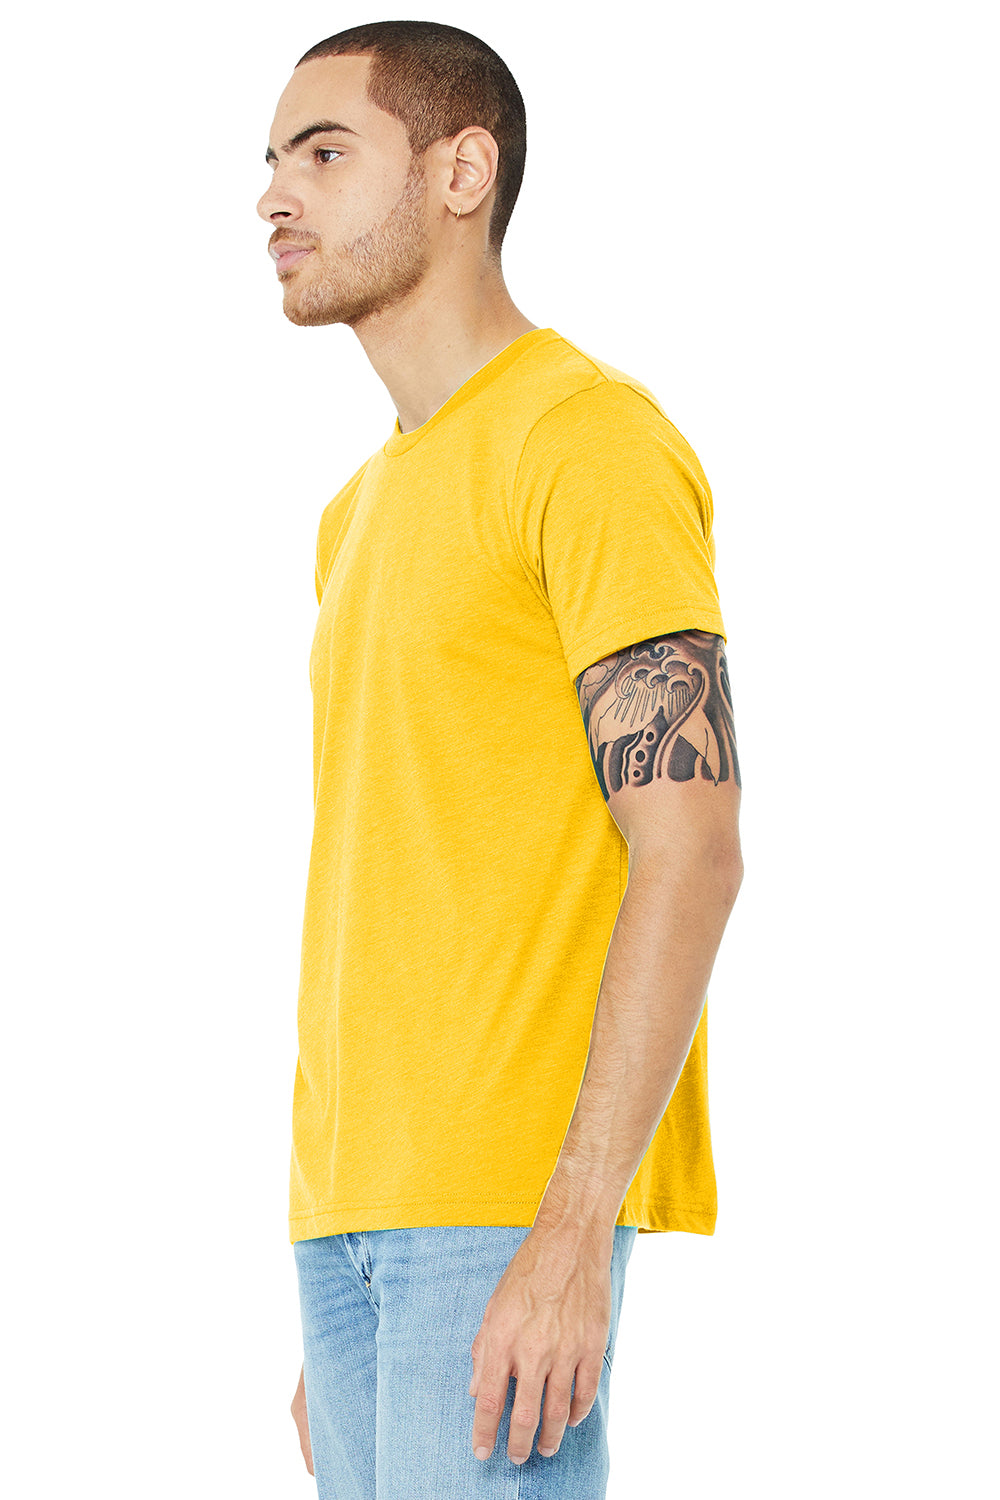 Bella + Canvas BC3413/3413C/3413 Mens Short Sleeve Crewneck T-Shirt Yellow Gold Model 3Q